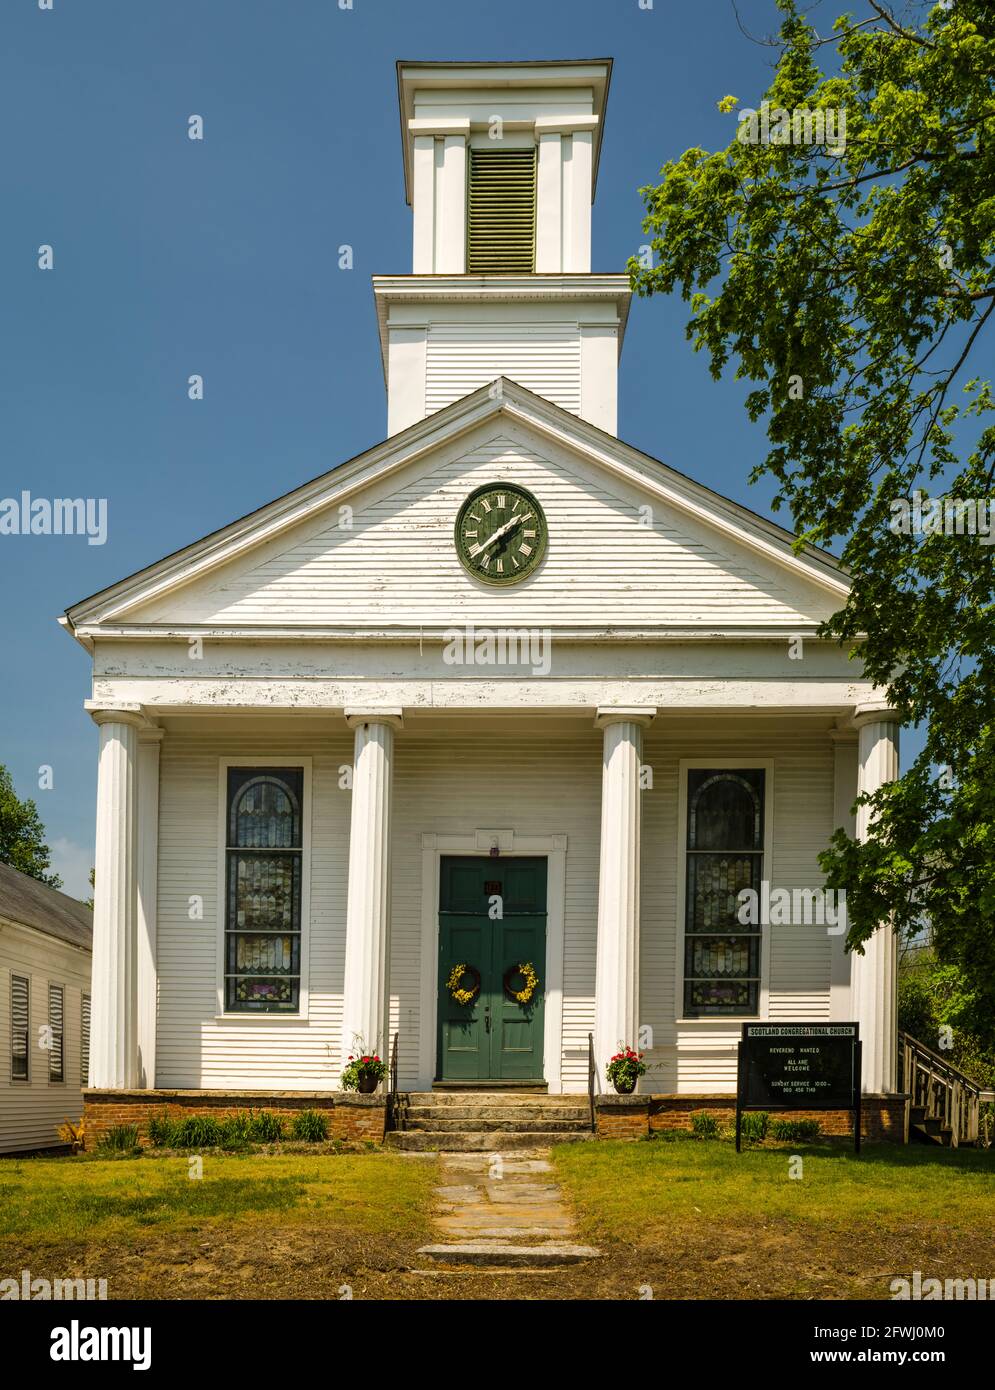 Scotland Congregational Church   Scotland, Connecticut, USA Stock Photo